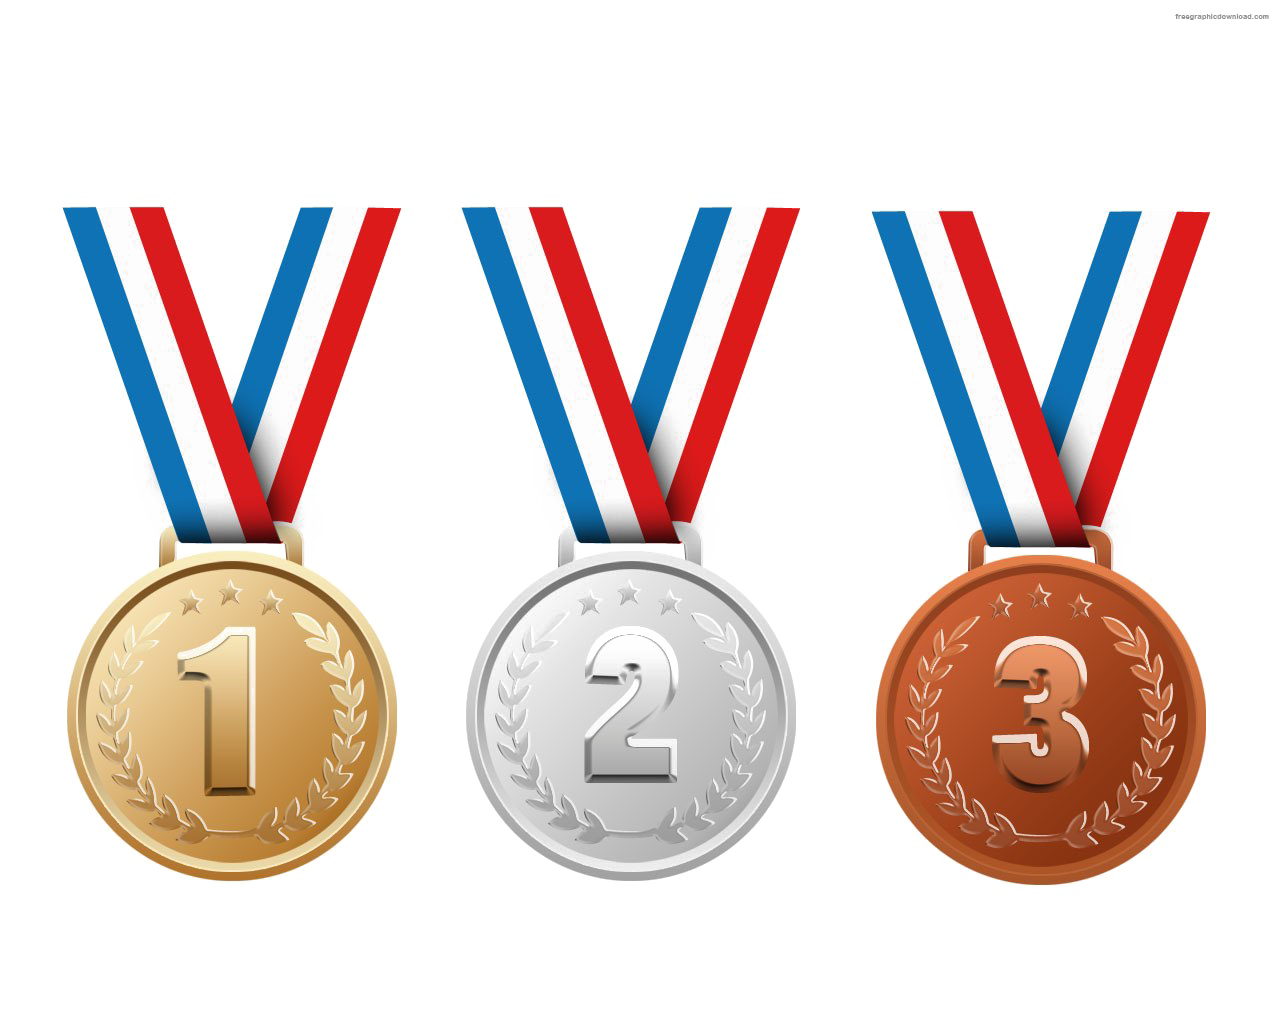 Medal download. Медали. Медали спортивные. Золотая серебряная и бронзовая медаль. Медали золото серебро бронза.